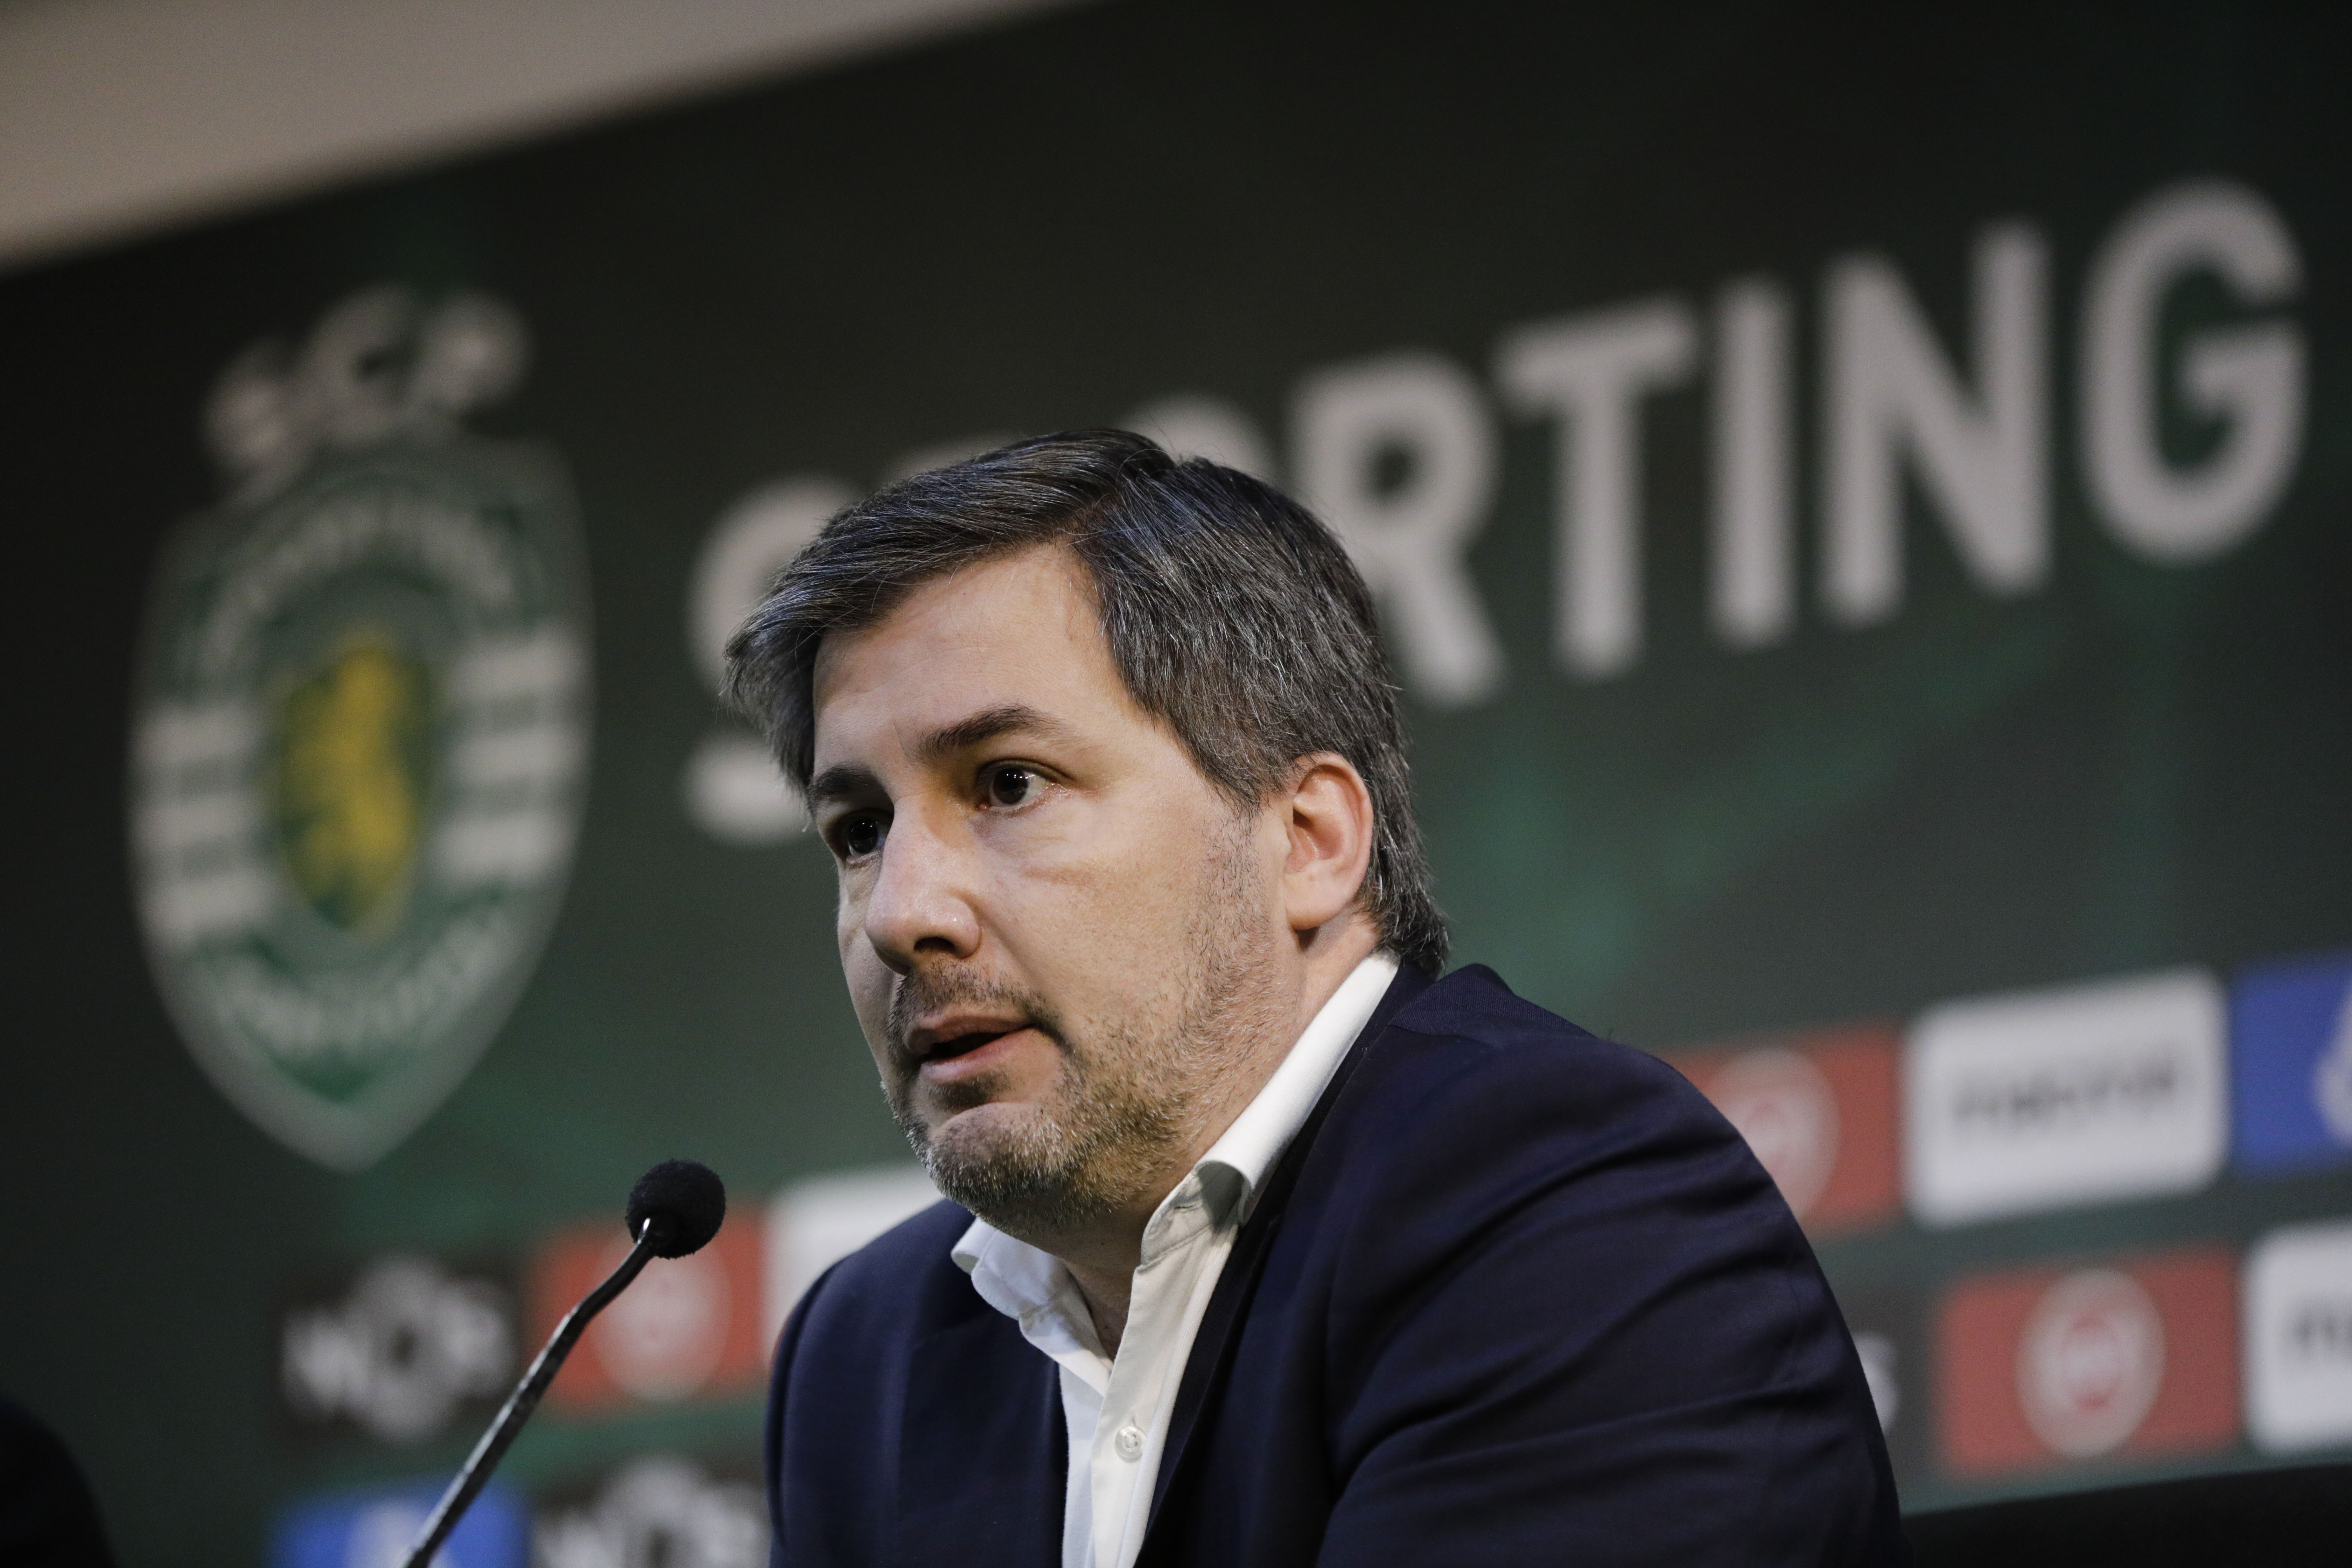 Bruno de Carvalho fala em &#8220;tomada de poder à força&#8221; no Sporting